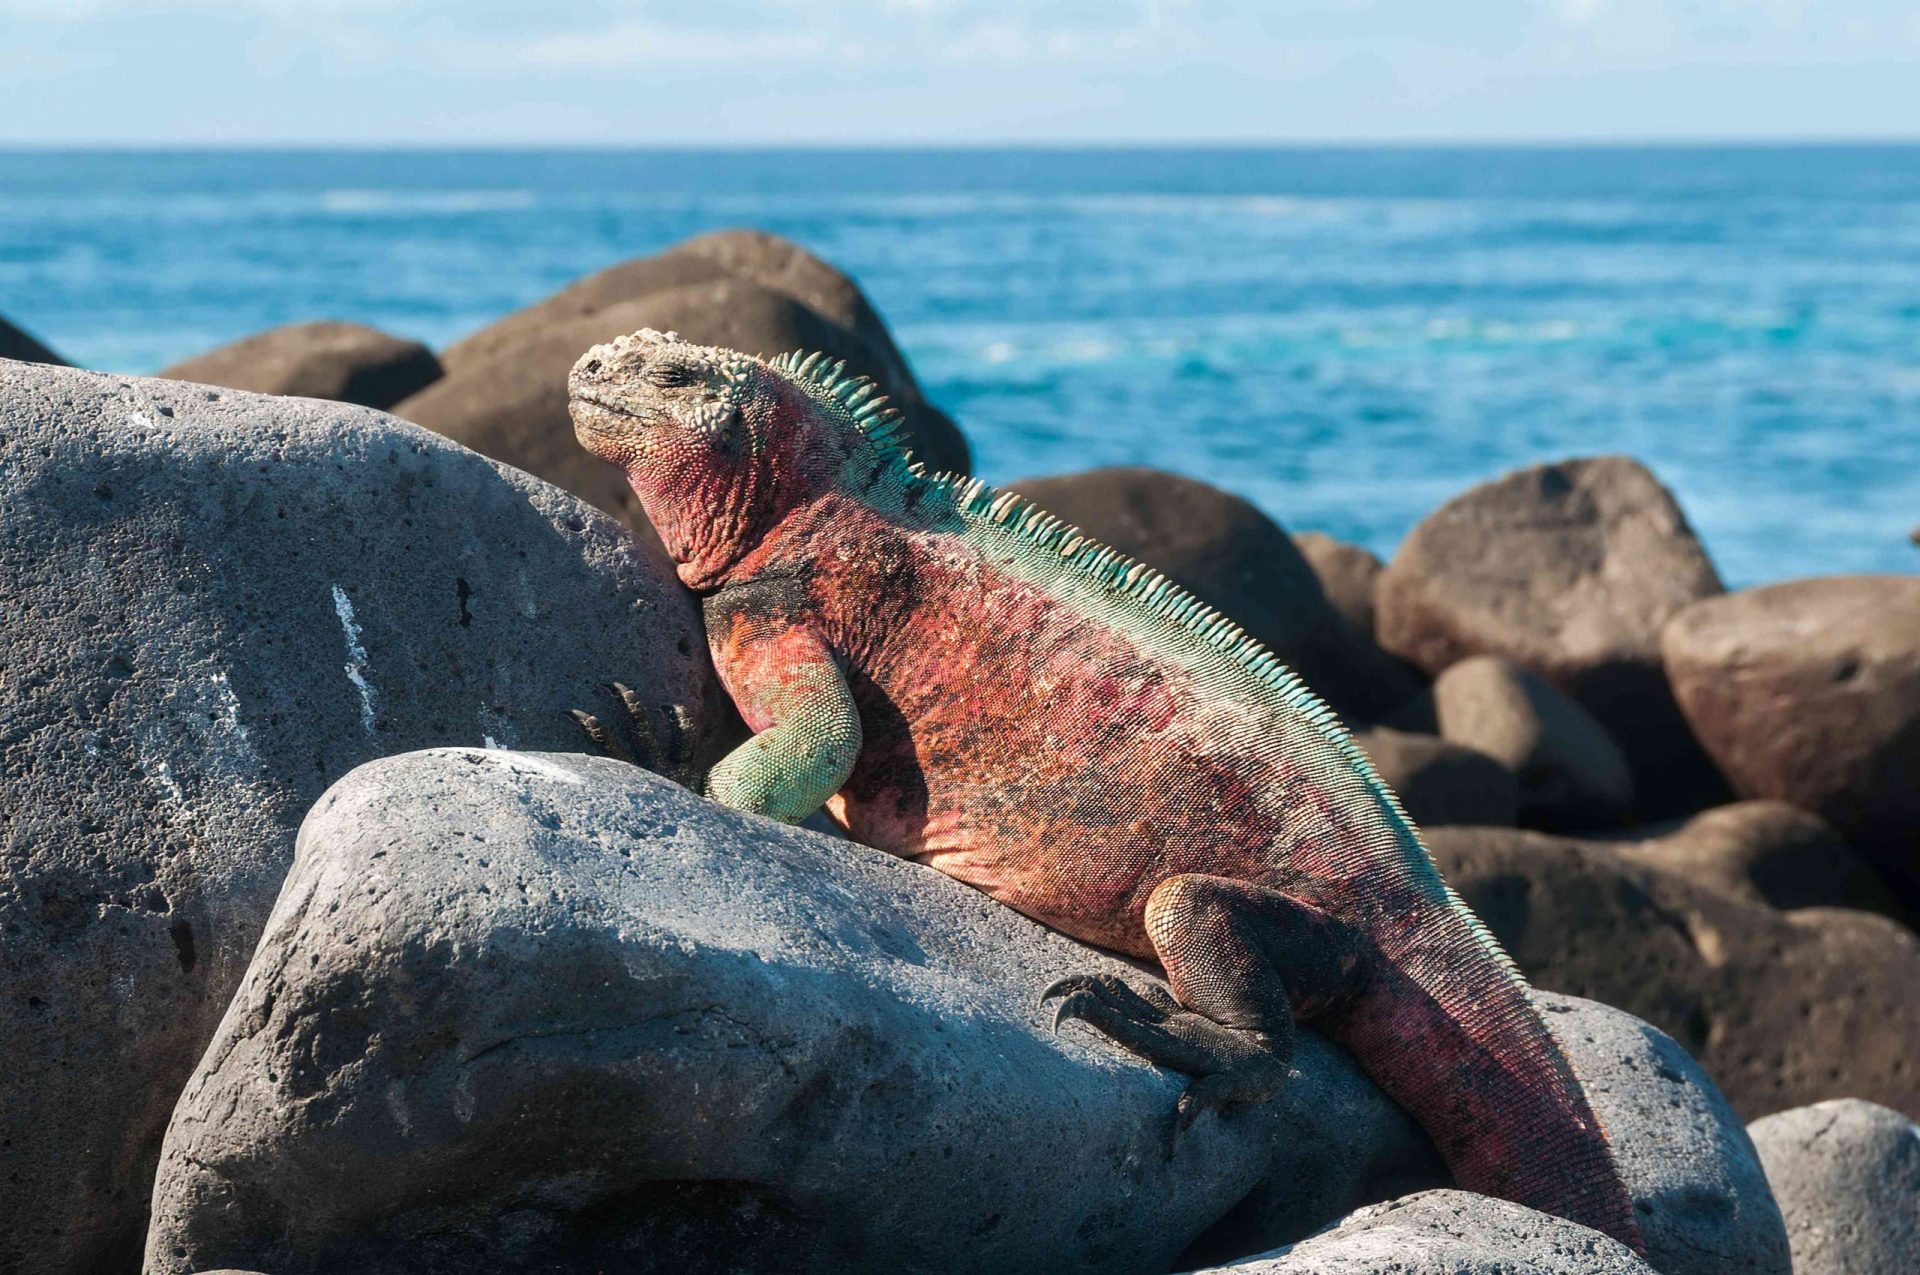 Una iguana marina de Galápagos de color rojo con ribetes verdes tomando el sol sobre grandes rocas cerca del agua